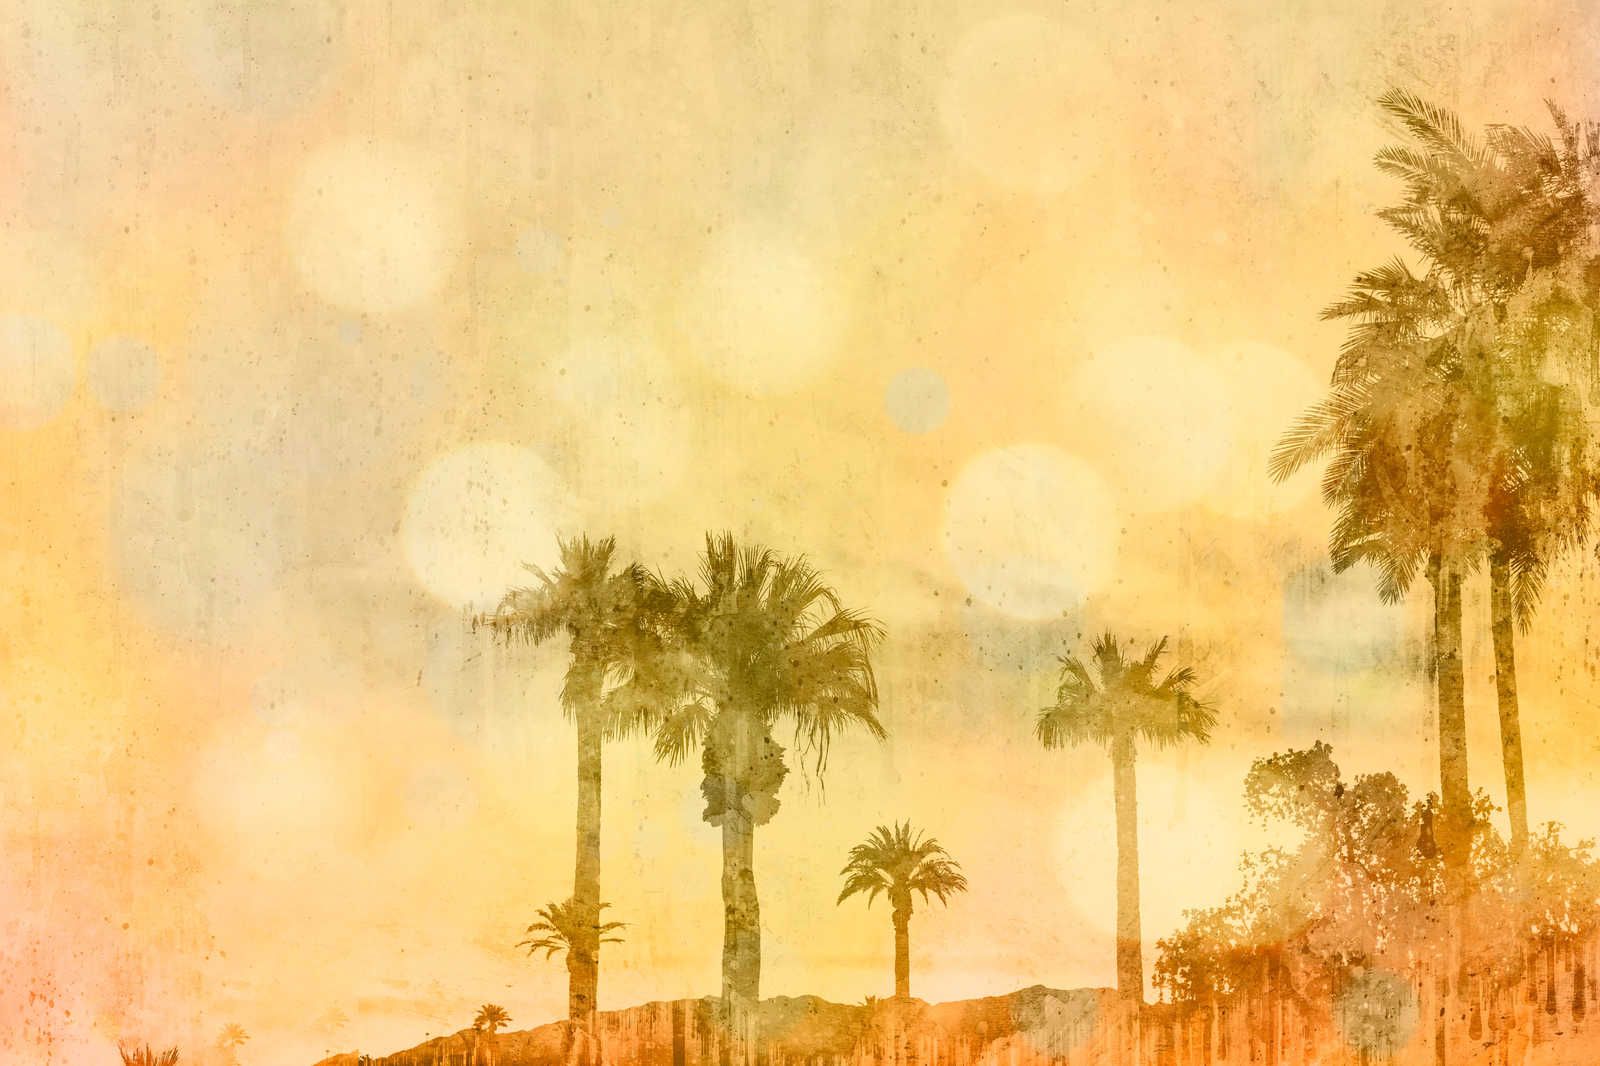             Leinwandbild Palmenstrand im Sonnenuntergang mit Lichteffekt – 0,90 m x 0,60 m
        